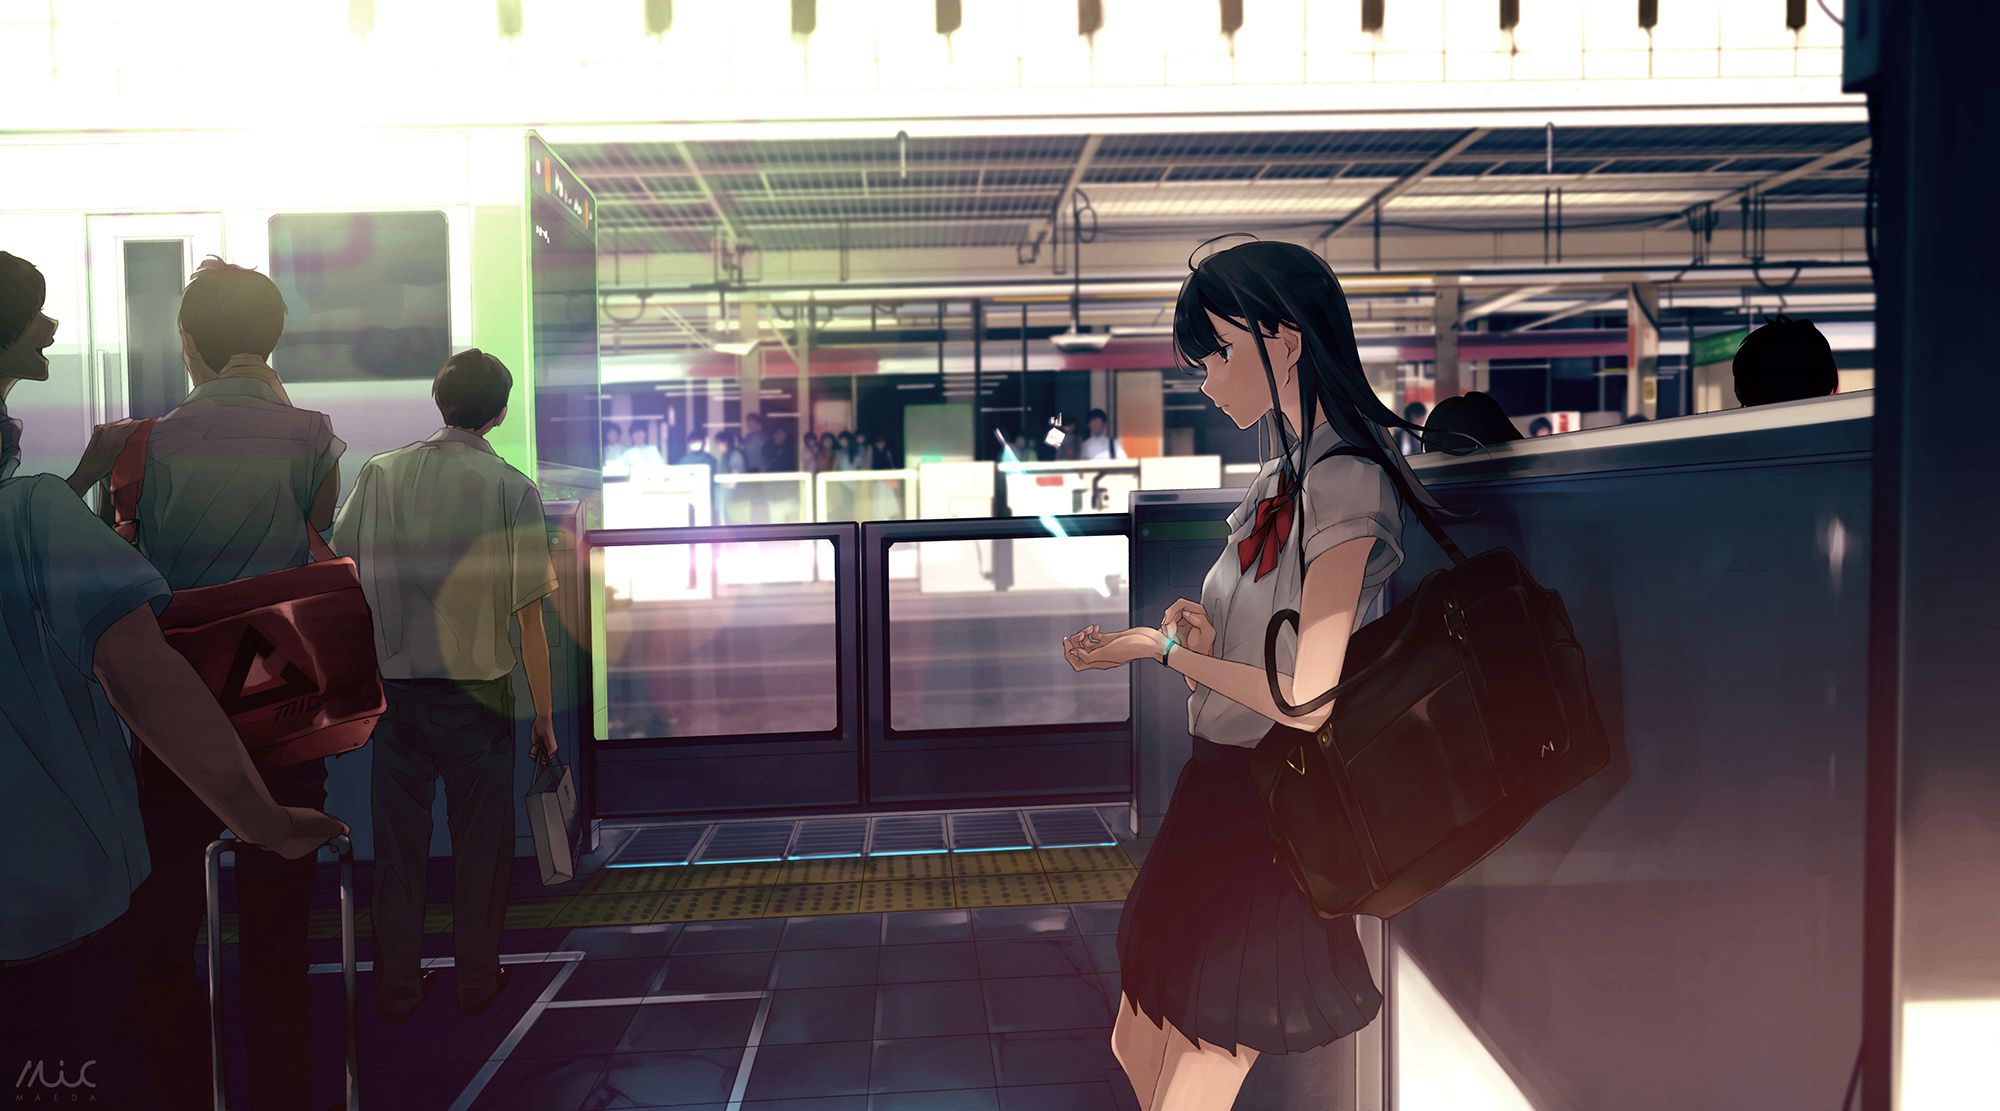 来来往往不停歇，列车抵达或出发月台上的二次元动漫学生制服少女高清图片组图2